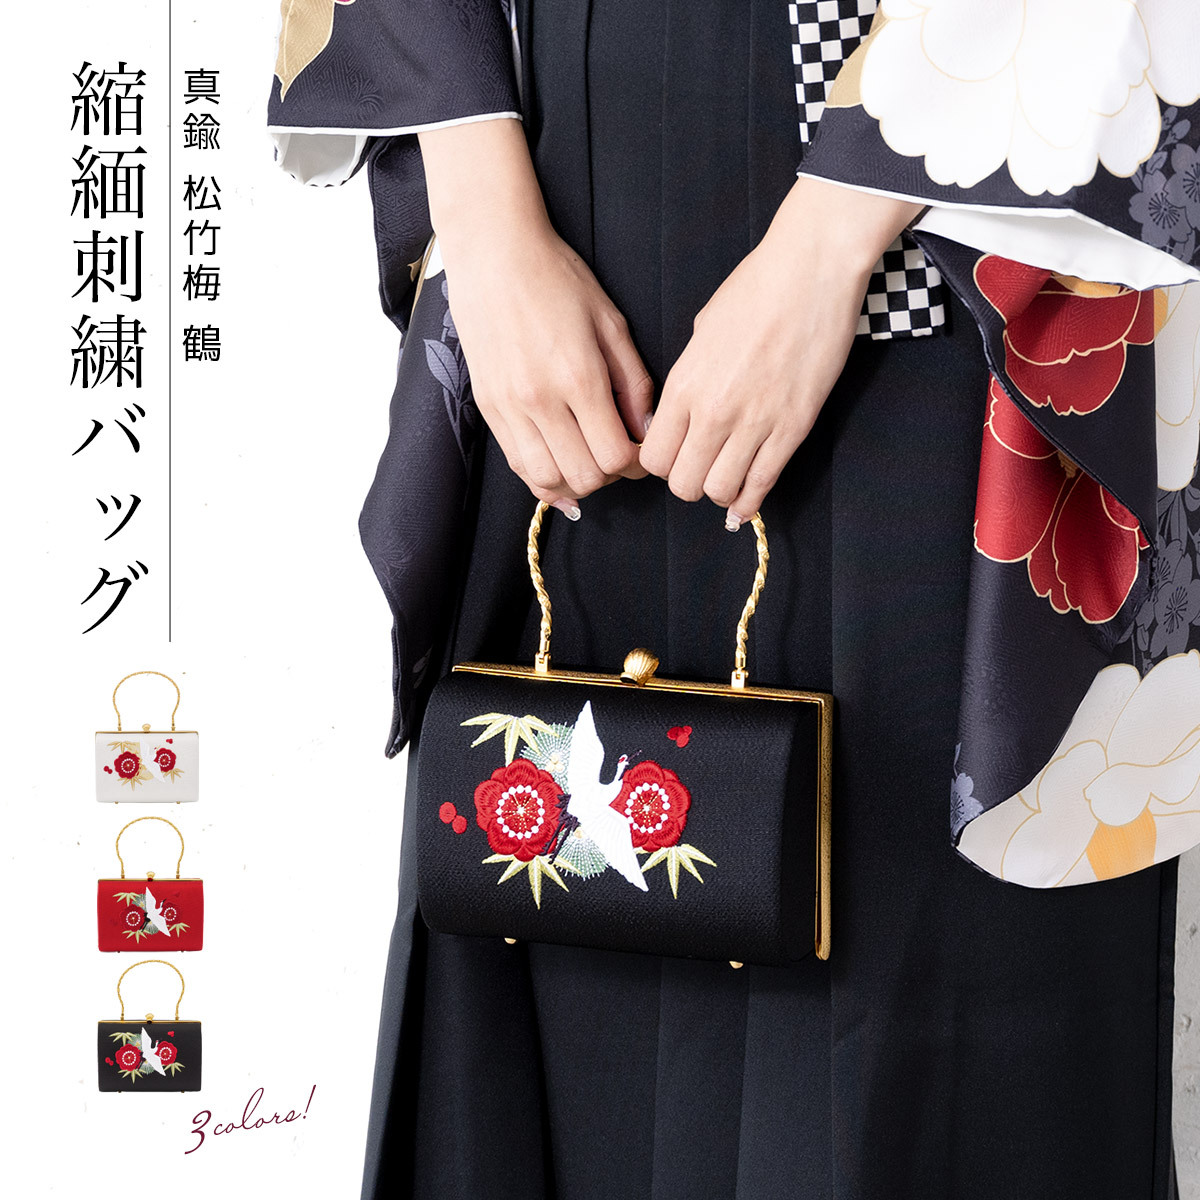 成人式 バッグ 単品 卒業式 振袖用 袴用 白 赤 黒 刺繍 ちりめん 松竹梅